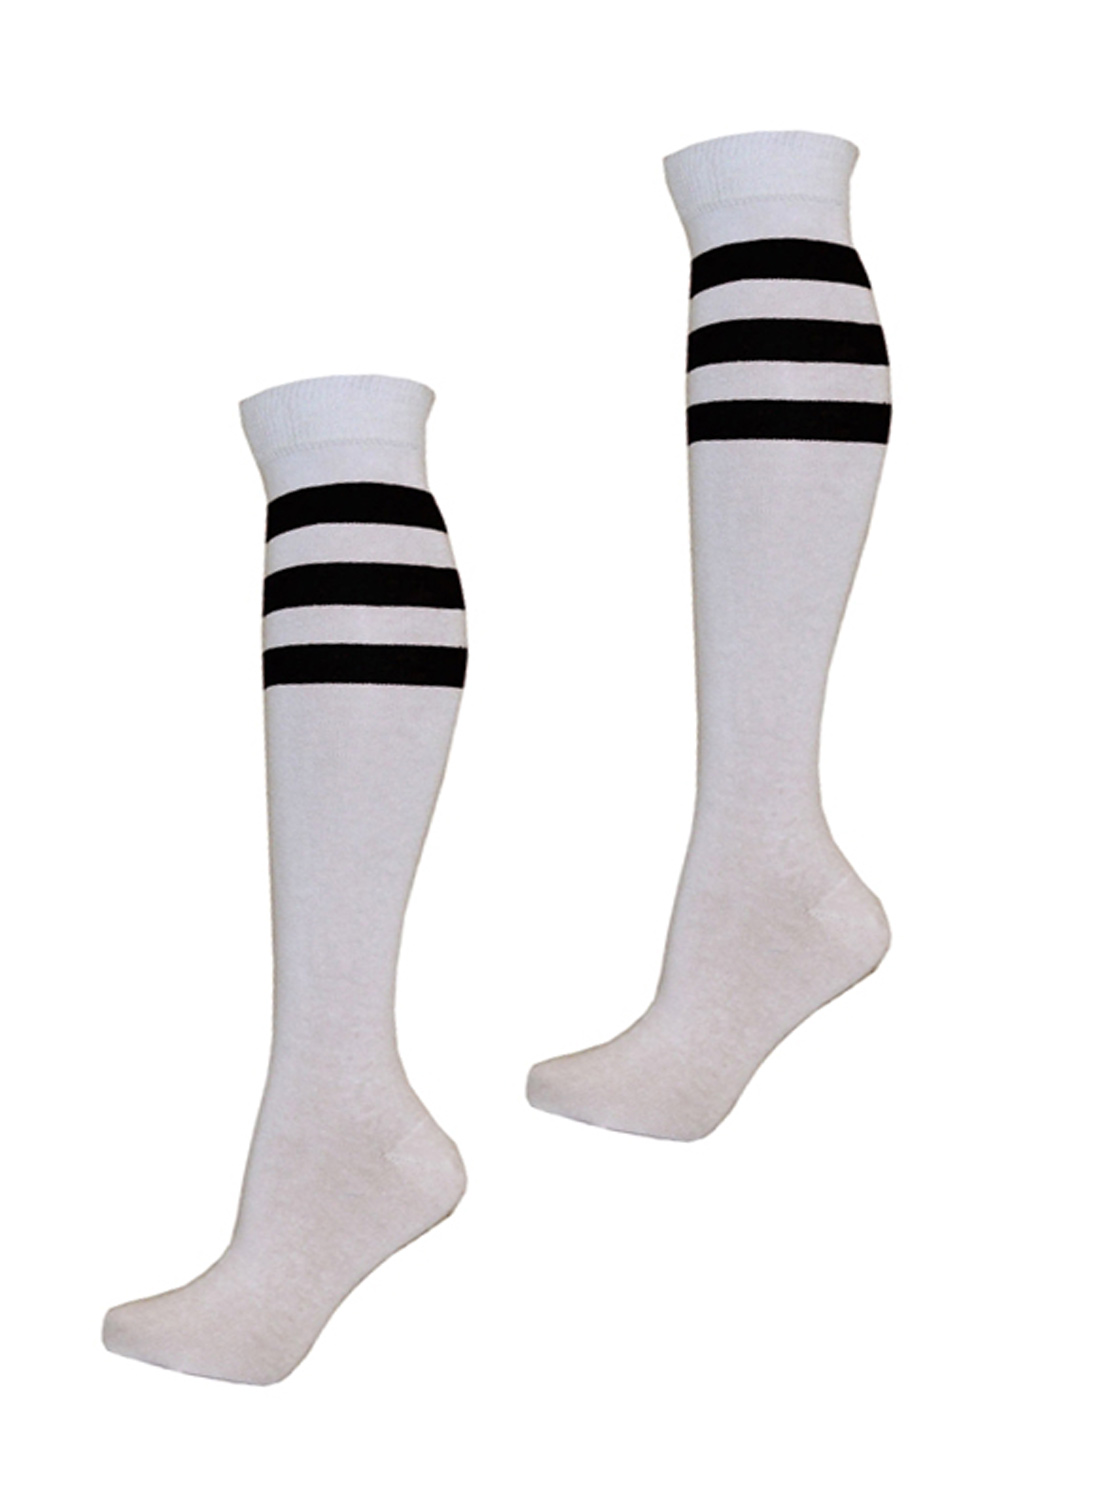 KH Sport Socks White Black Stripes